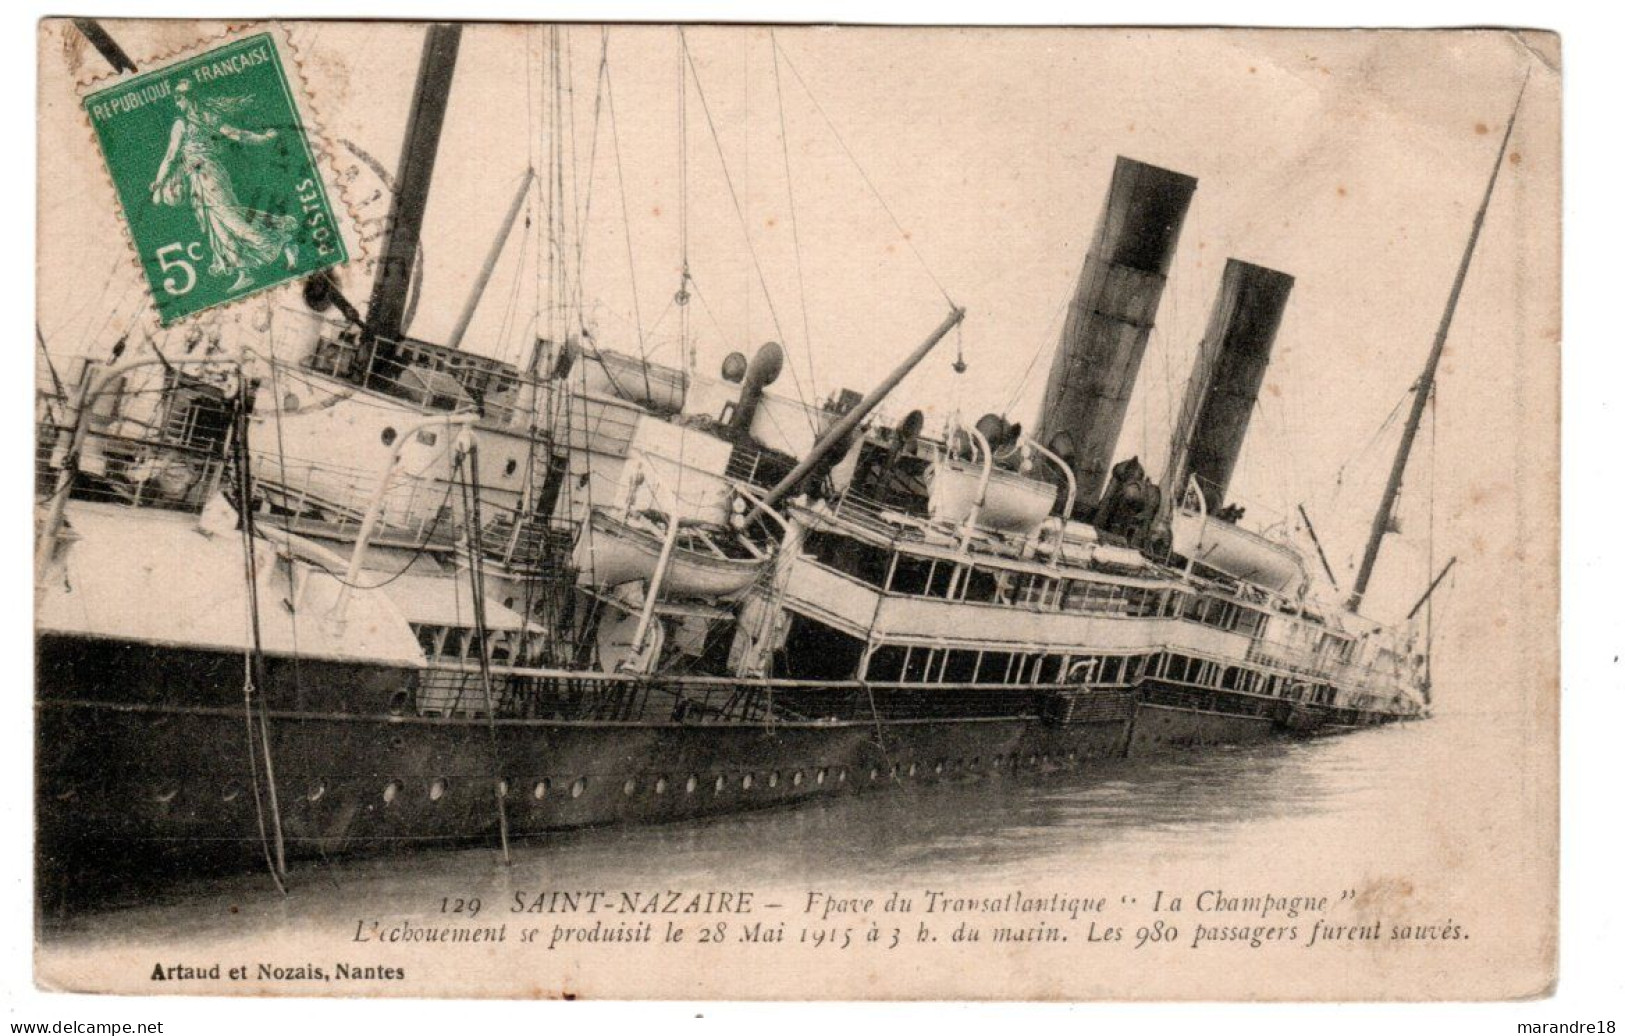 Saint Nazaire , épave Transatlantique "la Champagne" échoué 1915 - Paquebote